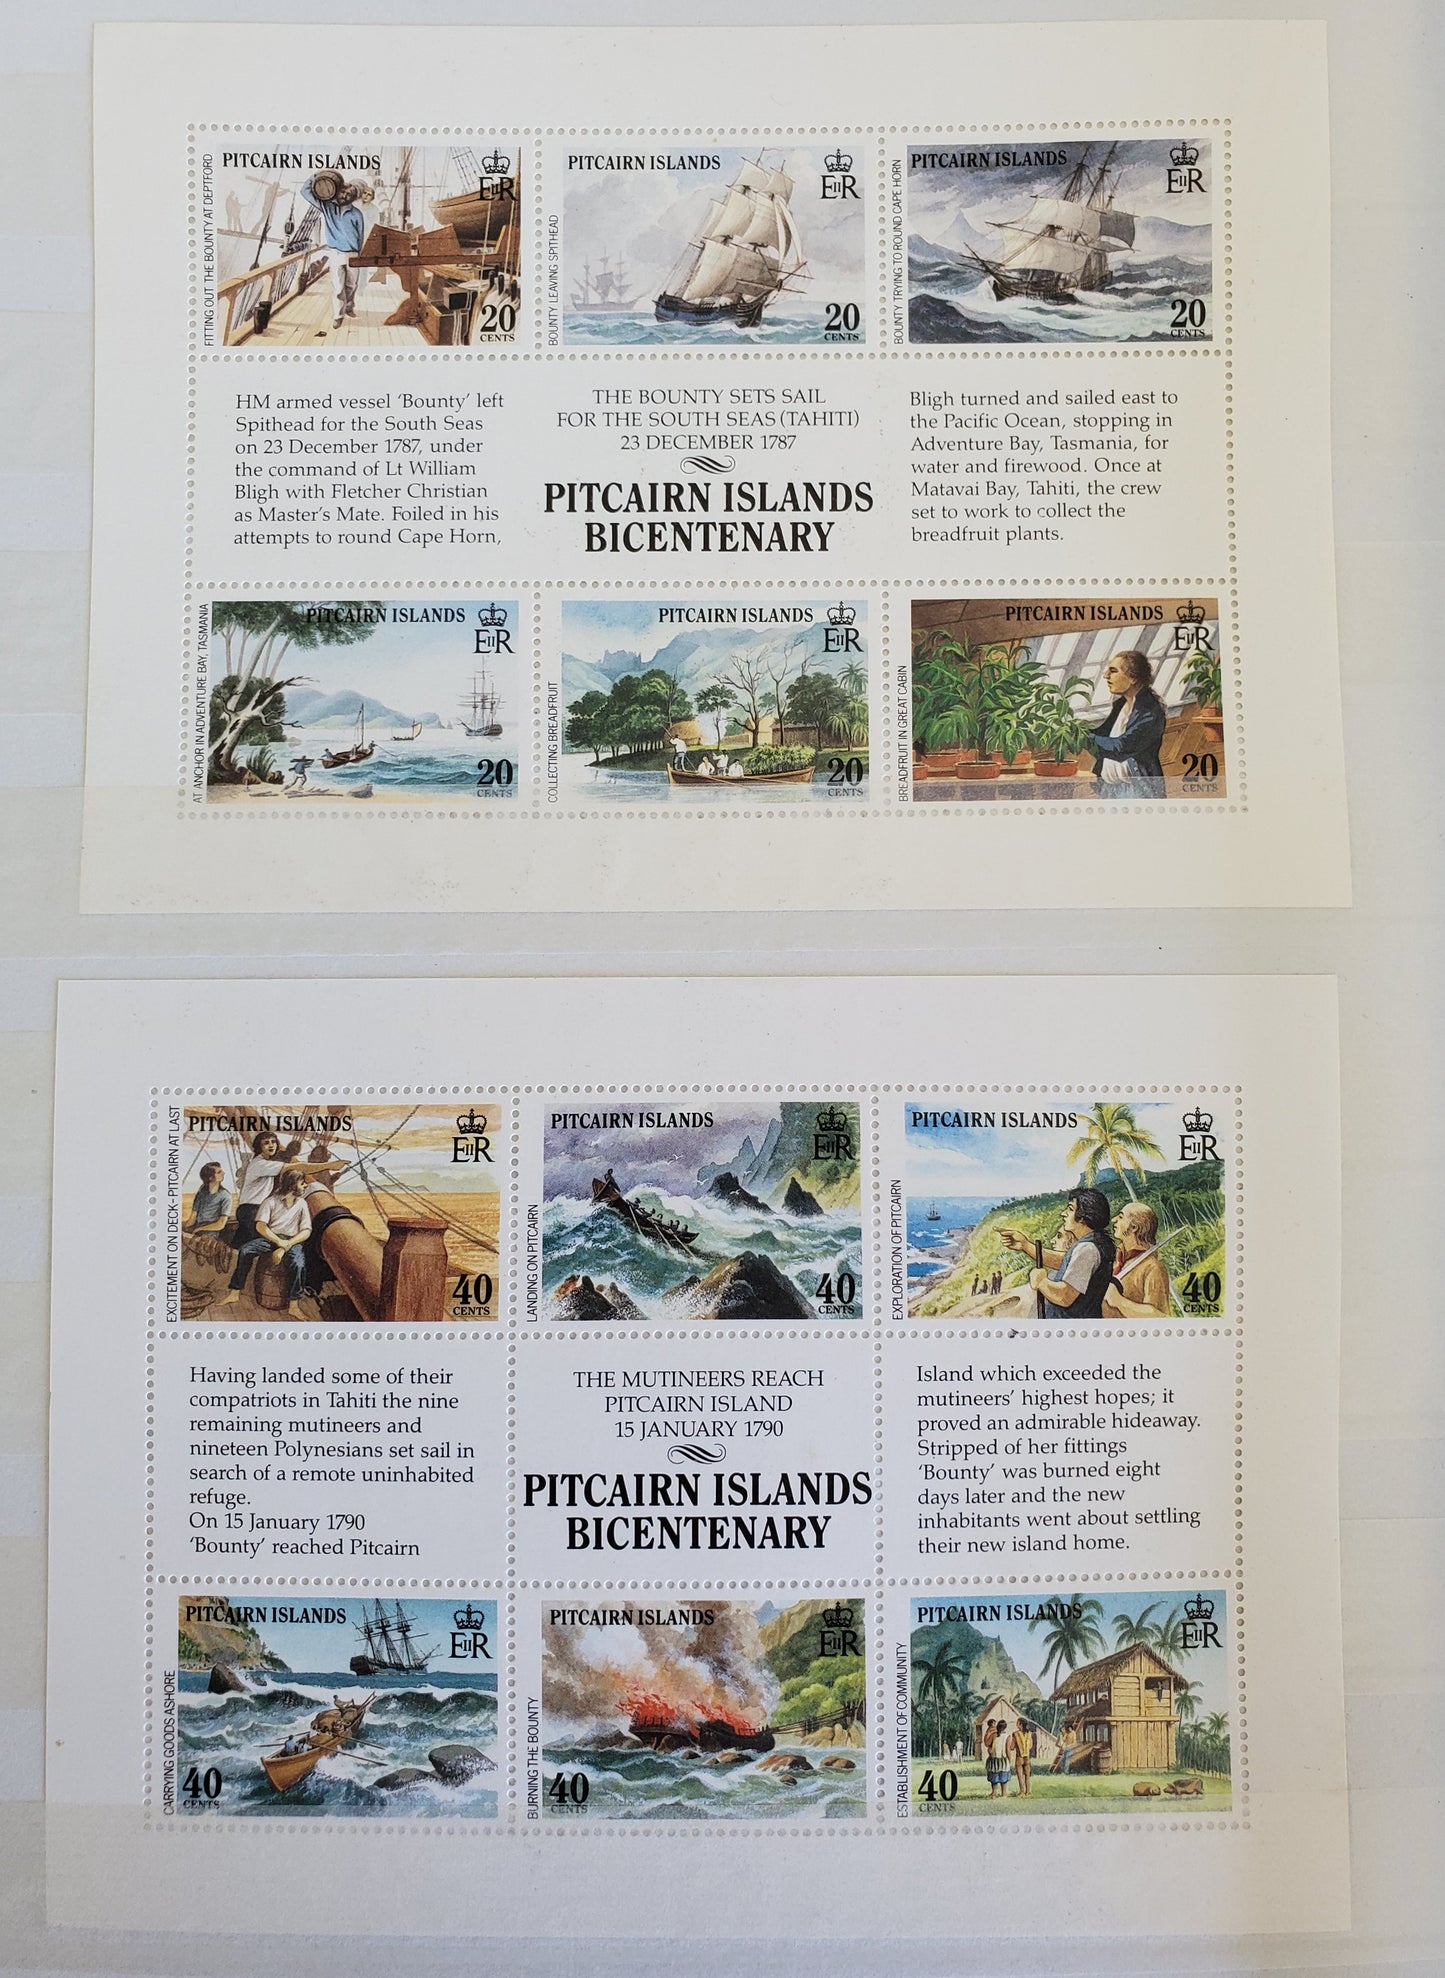 En komplett samling av Pitcairn Island Frimärken - Album